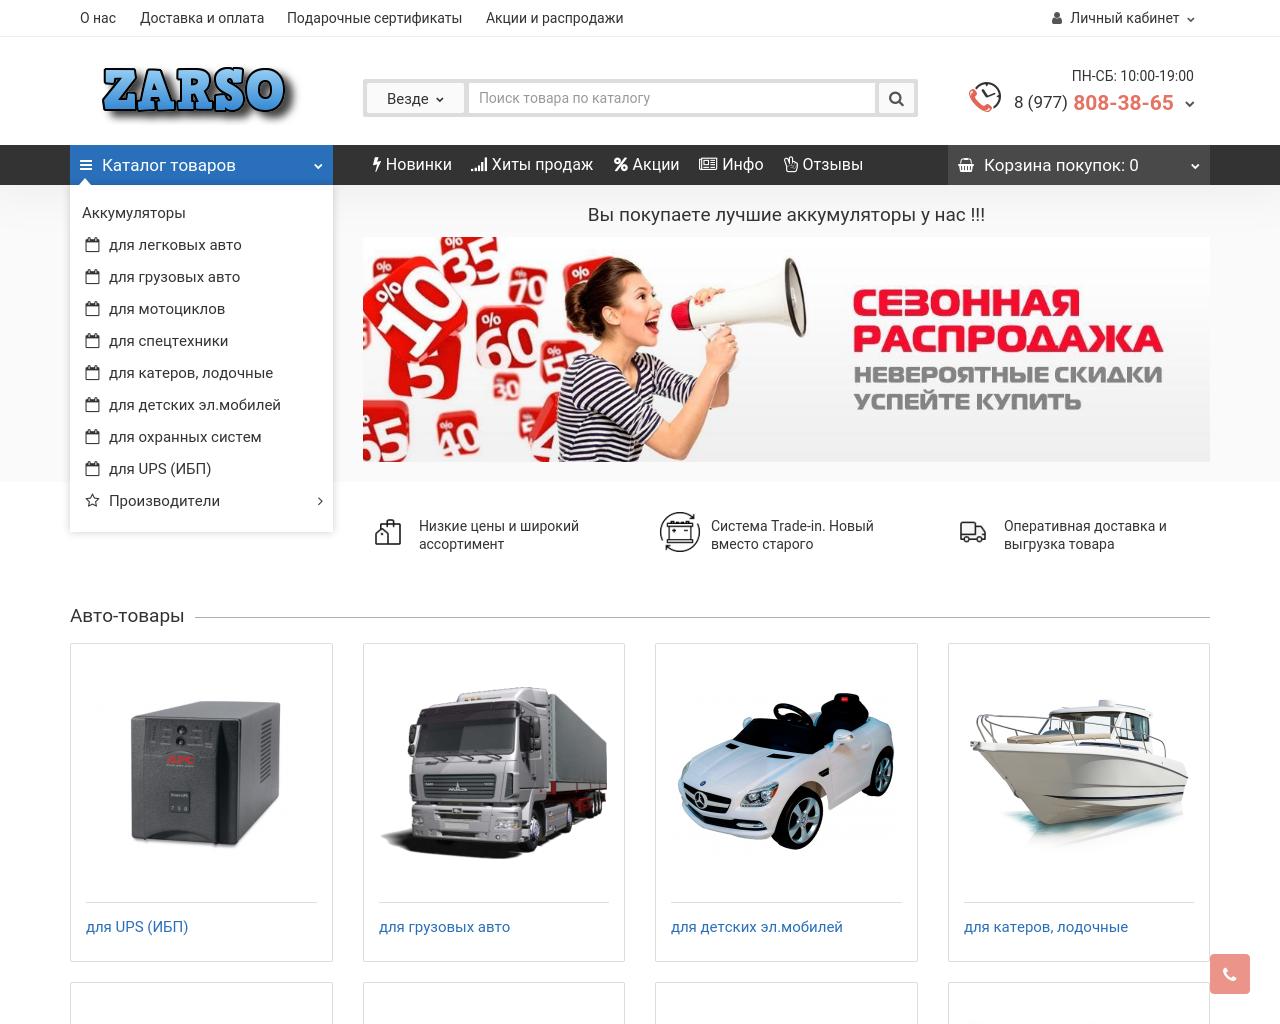 Изображение сайта zarso.ru в разрешении 1280x1024